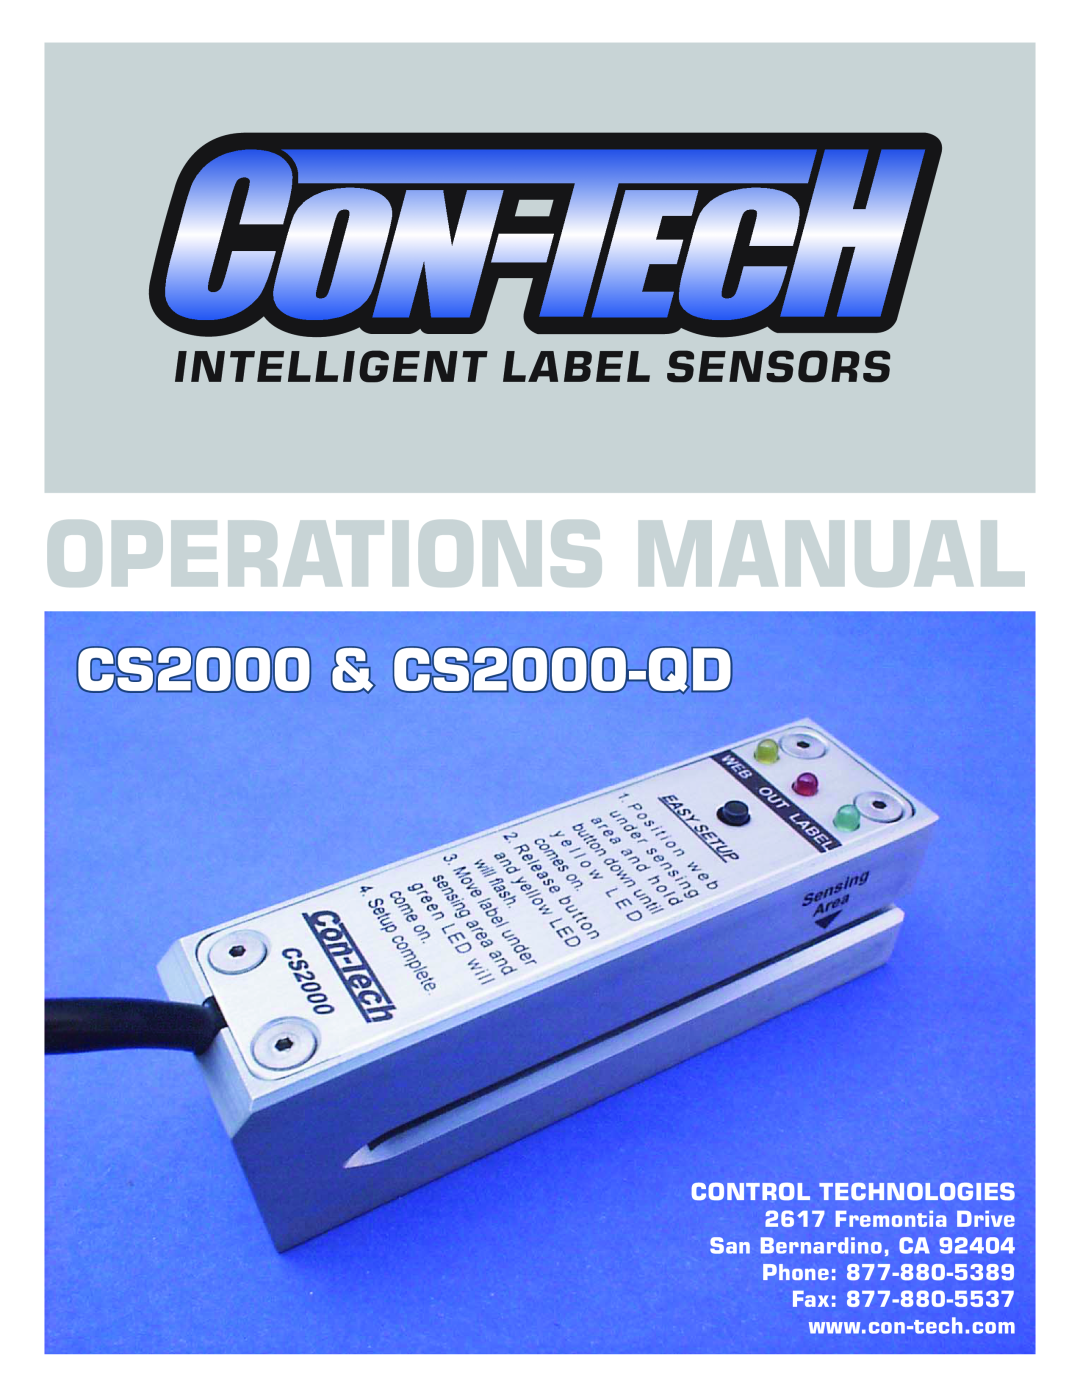 Contec CS2000-QDCS2000 manual Operations Manual, CS2000 & CS2000-QD, Intelligent Label Sensors, Control Technologies 